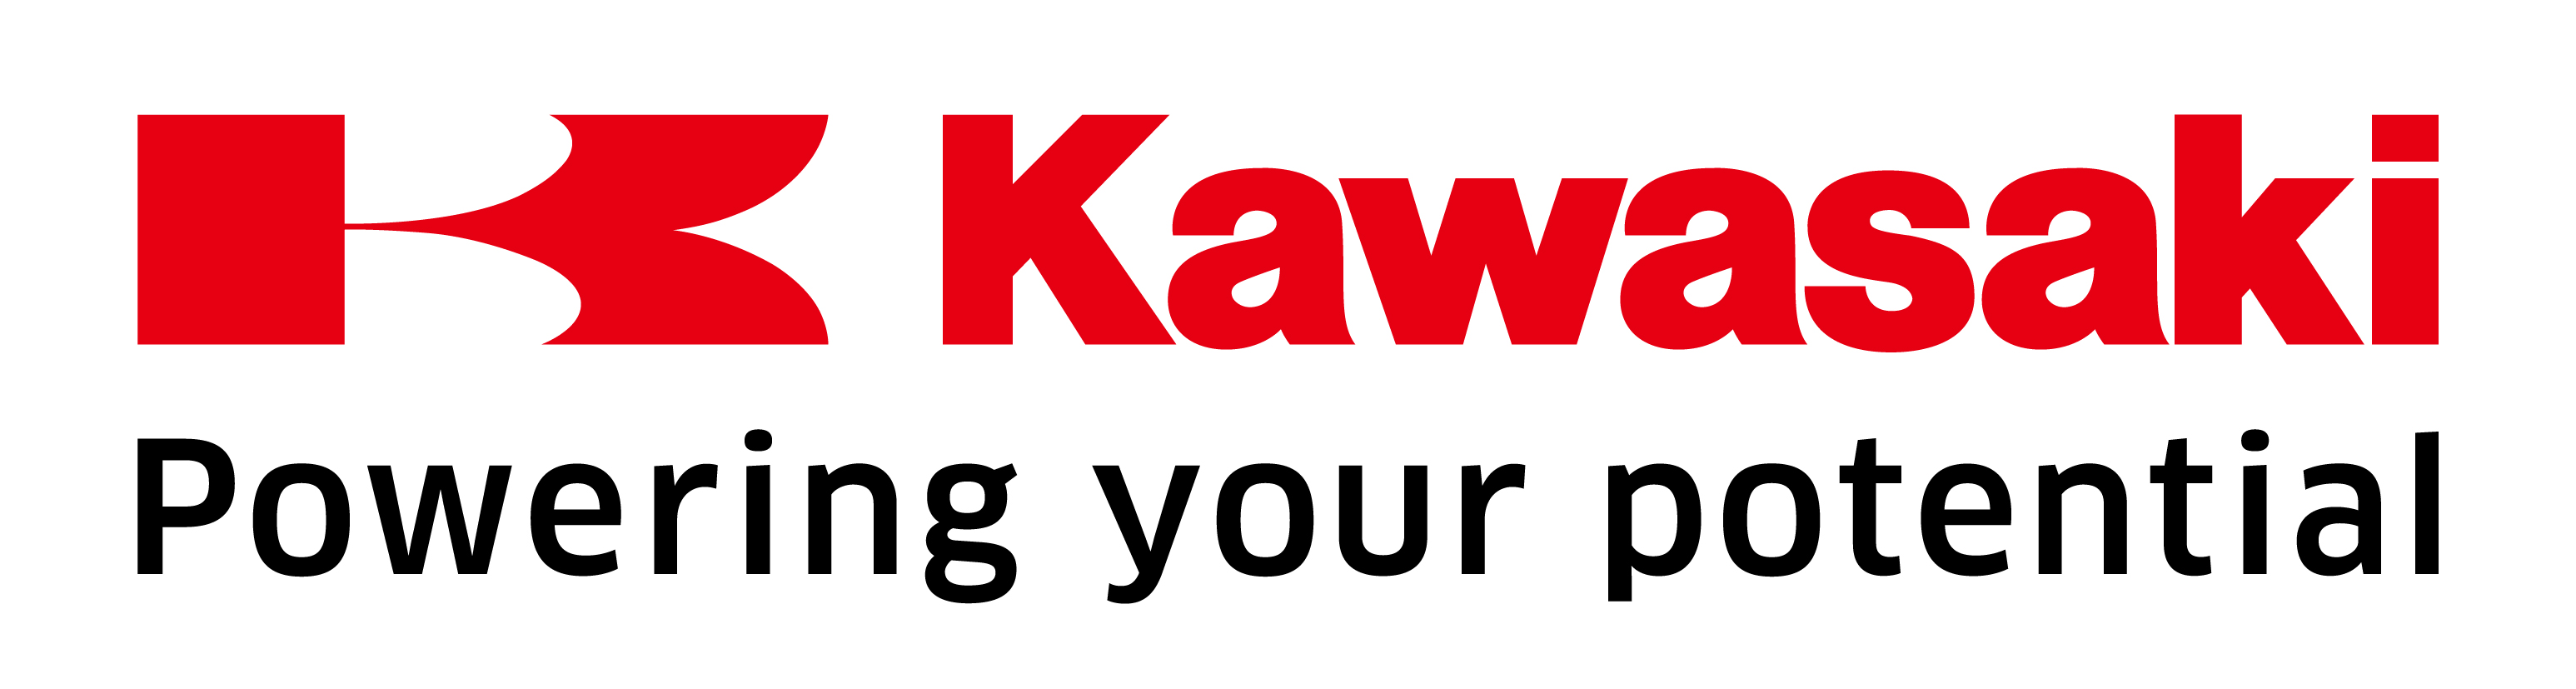 Kawasaki Heavy Industries, Ltd.